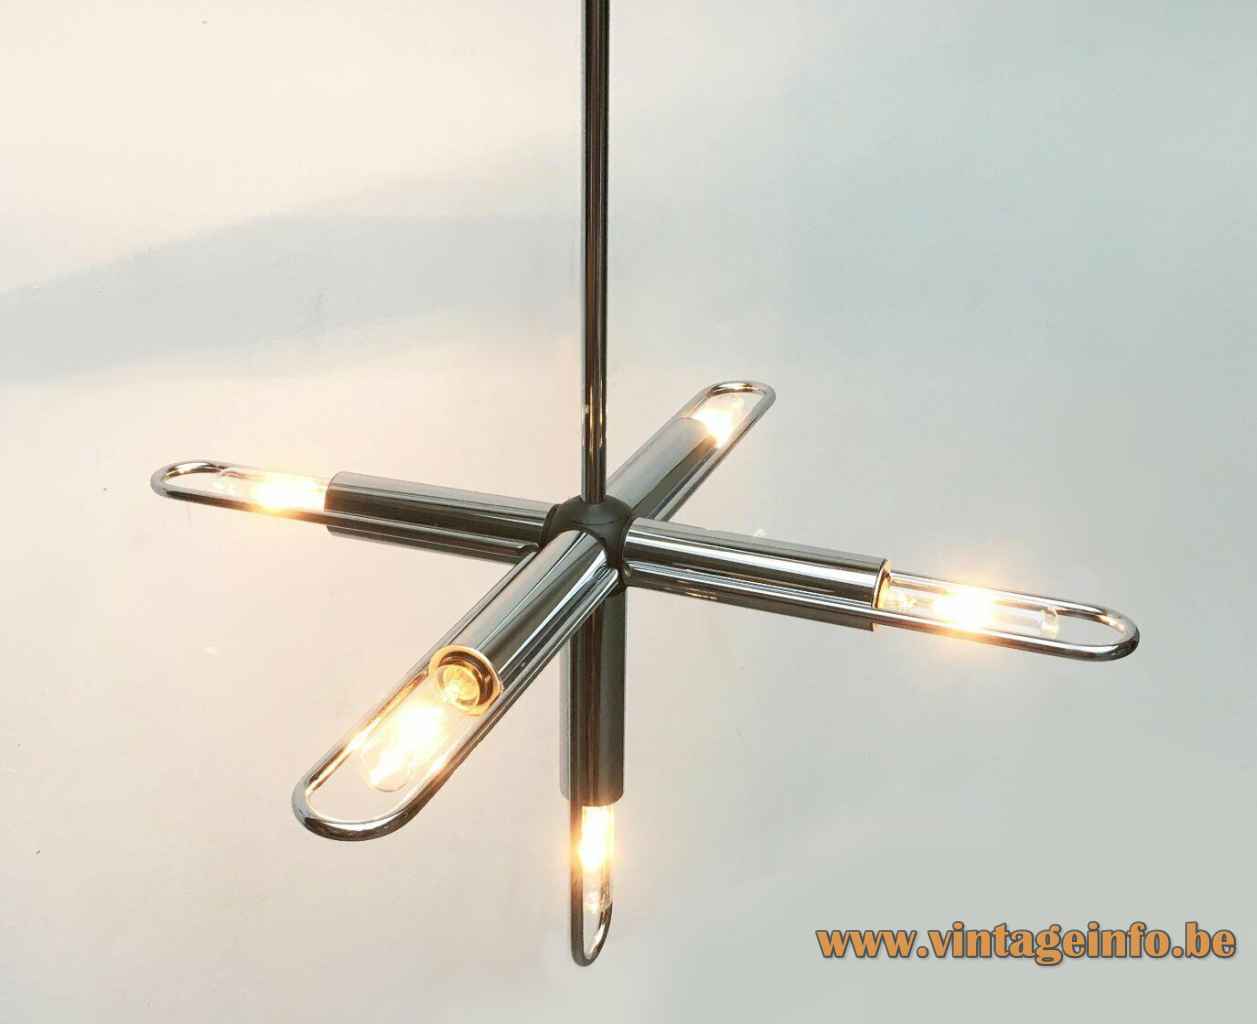 Kinkeldey chrome tubes chandelier curved metal rods 5 E14 light bulbs 1970s Germany Sputnik Space Age